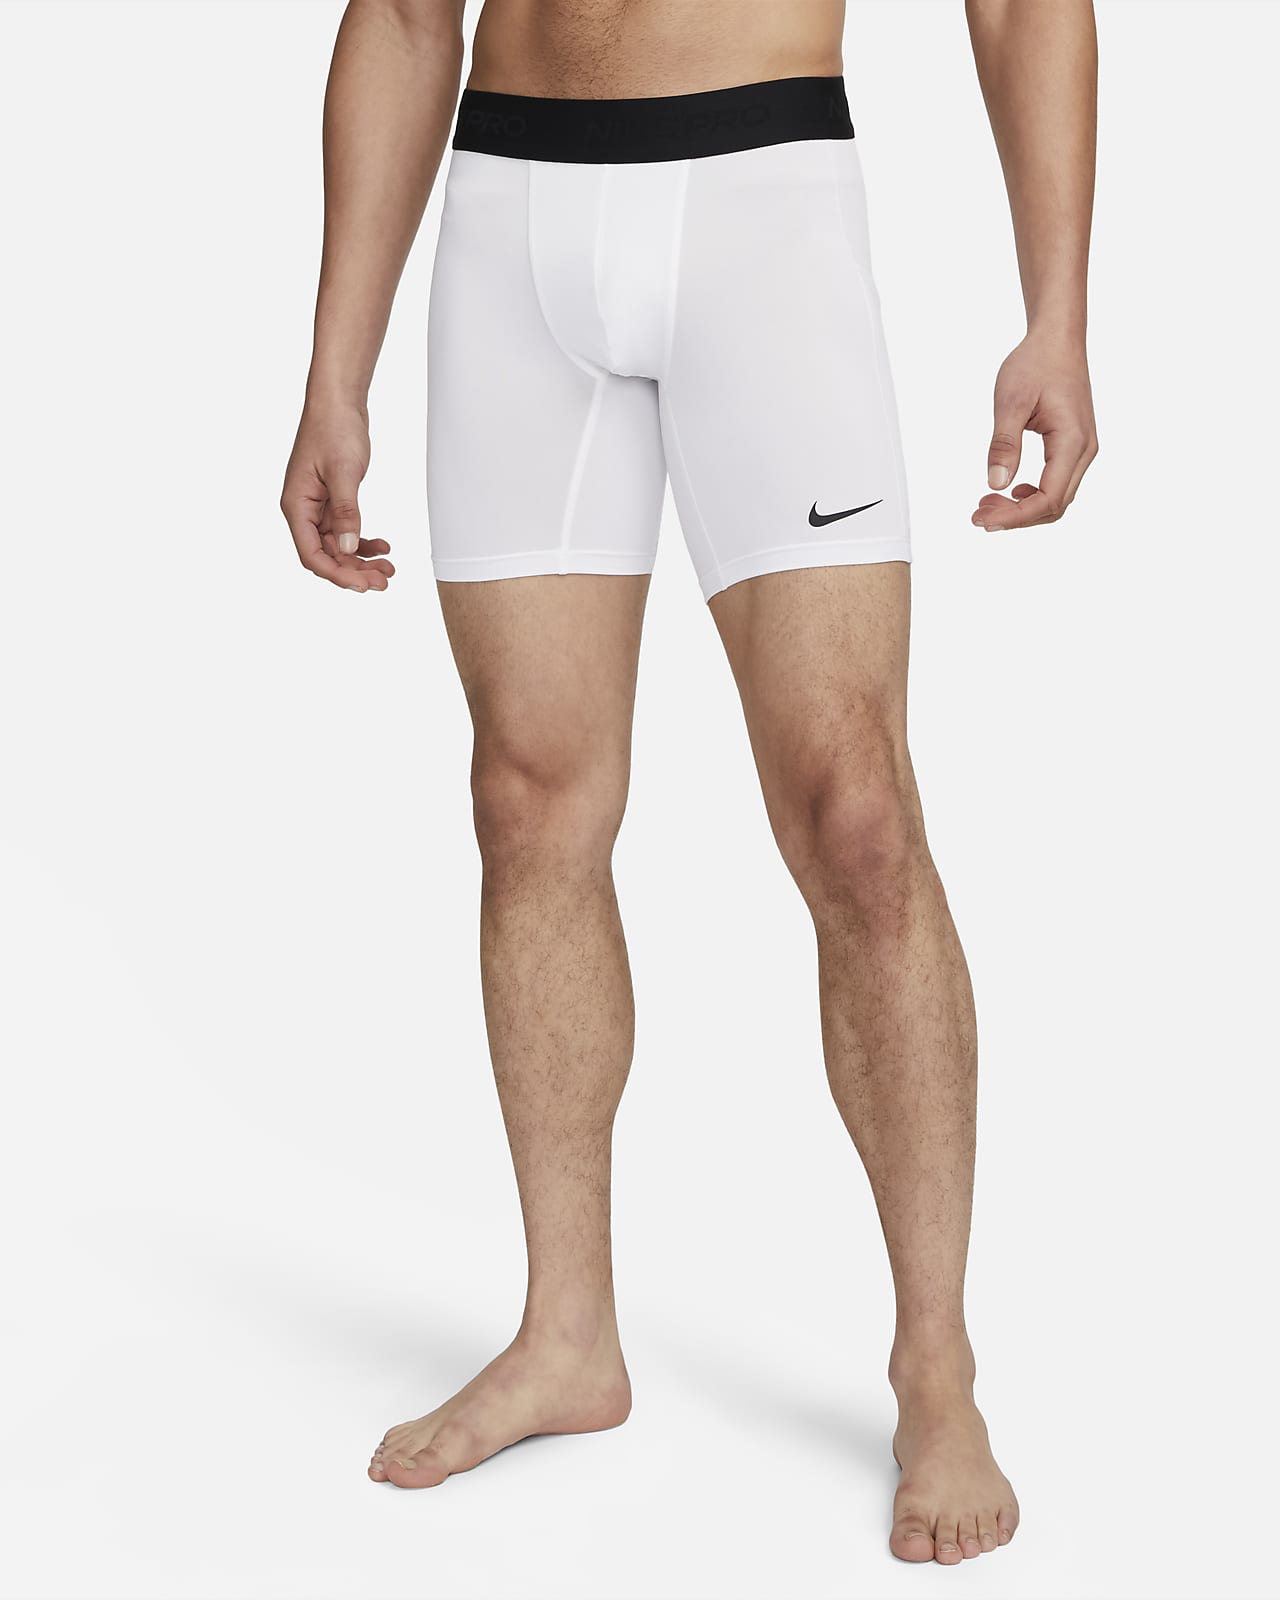 Nike Pro Dri Fit